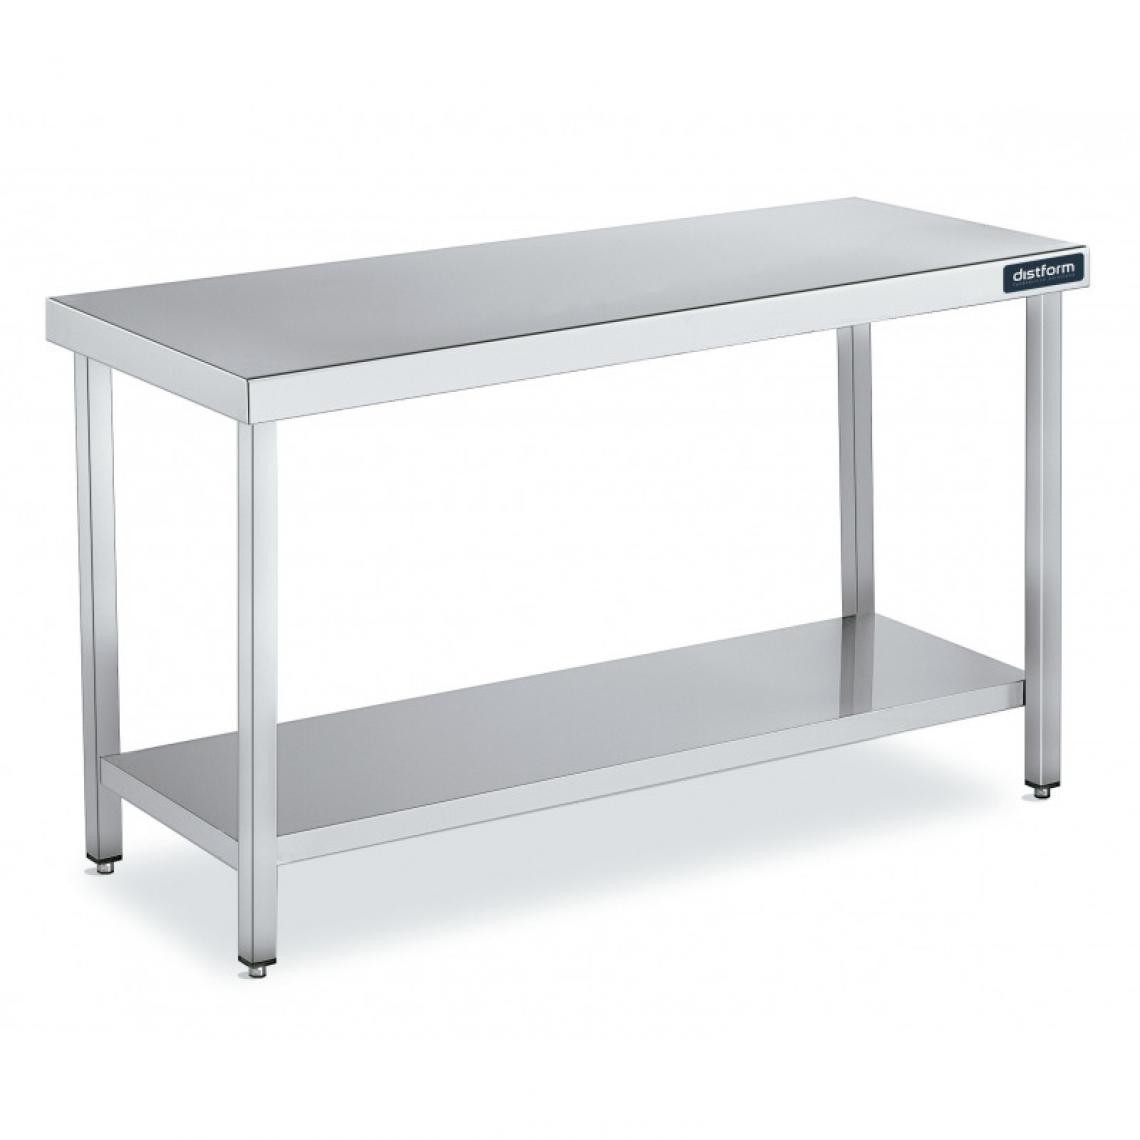 DISTFORM - Table Centrale en Inox avec 1 étagère Profondeur 700 mm - Distform - Acier inoxydable600x700 - Tables à manger